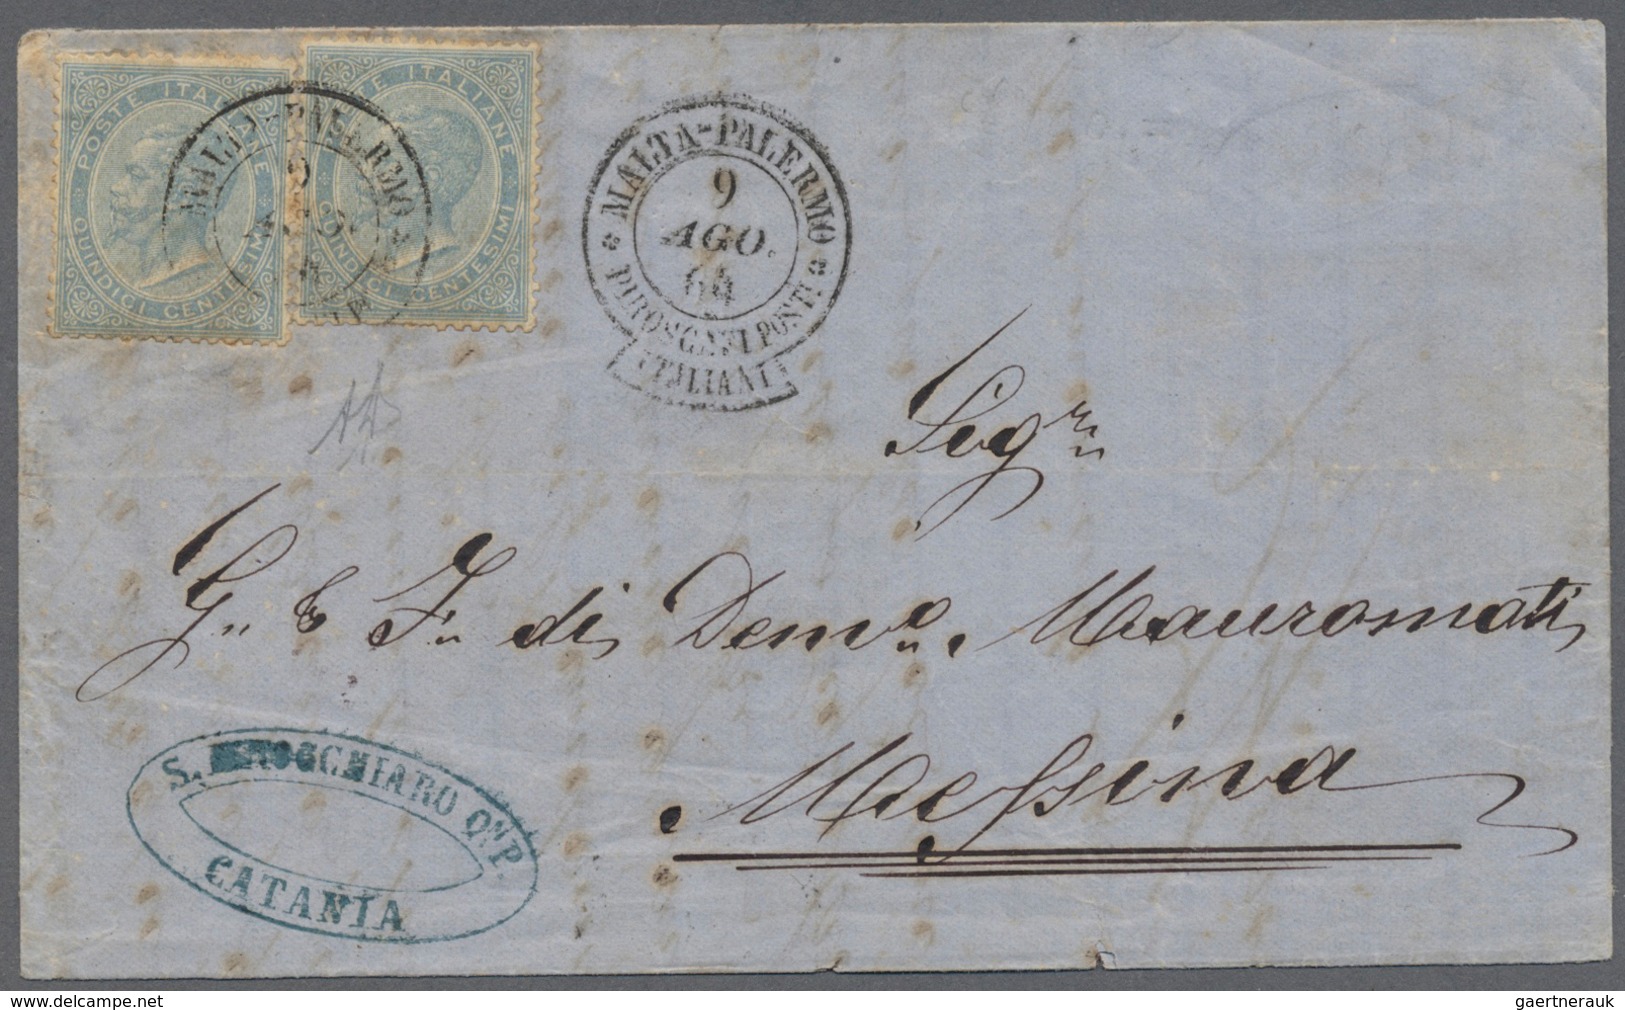 01052 Italien - Stempel: 1864: Rare Ships Mail Cancel "MALTA - PALERMO - PIROSCAFI POSTALI ITALIANI" Dated - Marcophilia